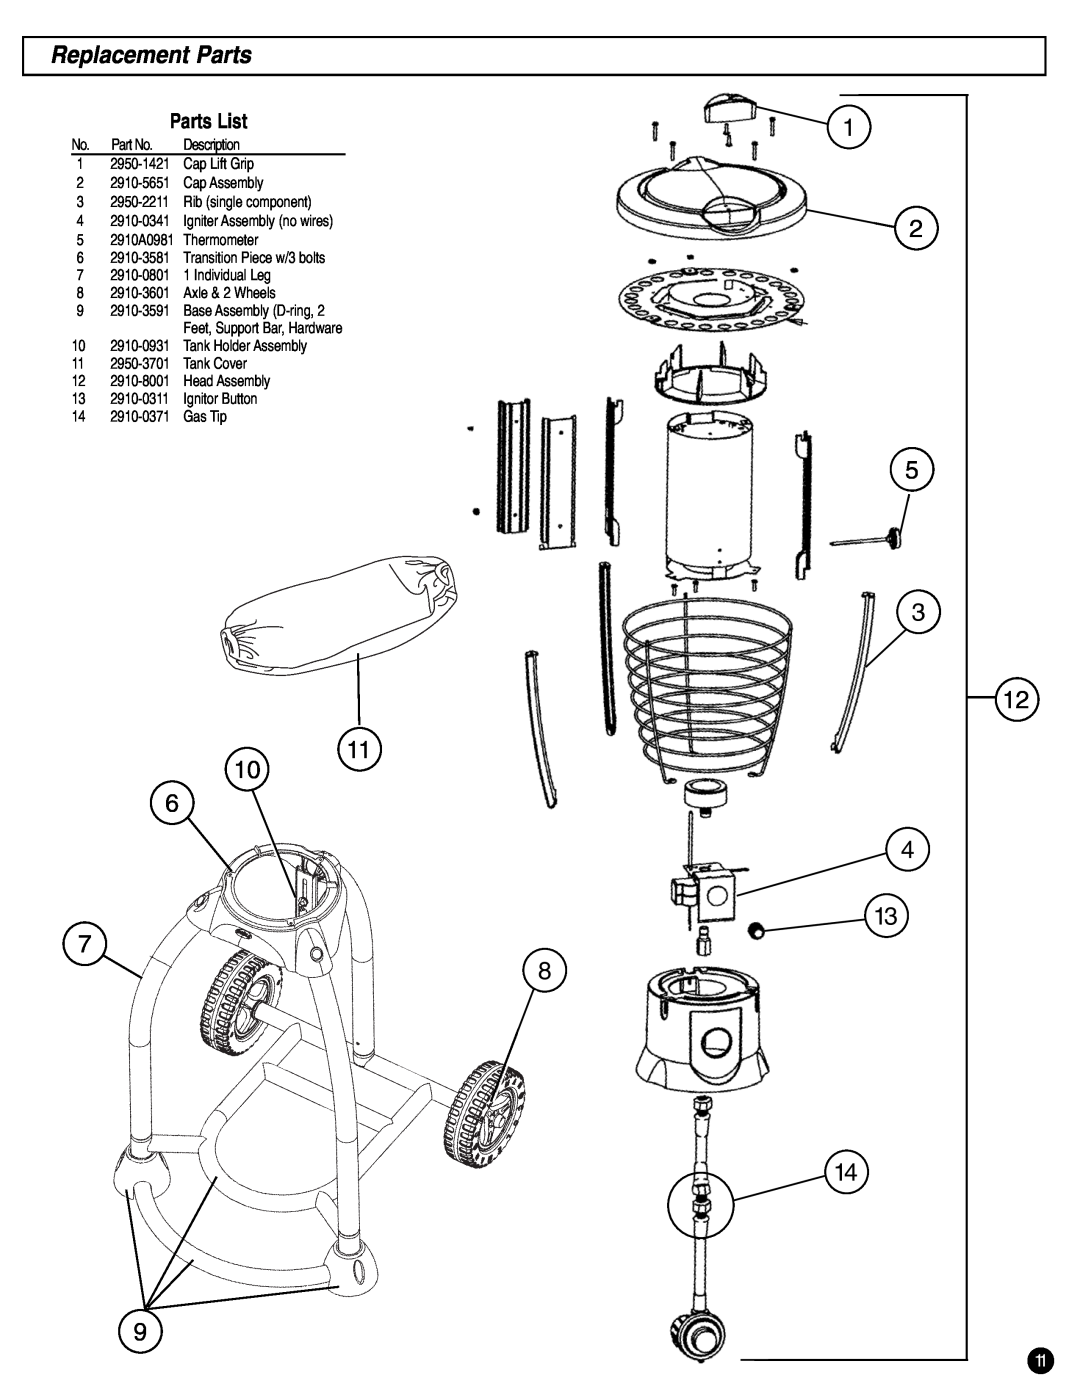 Coleman 2200 manual Replacement Parts, Parts List 